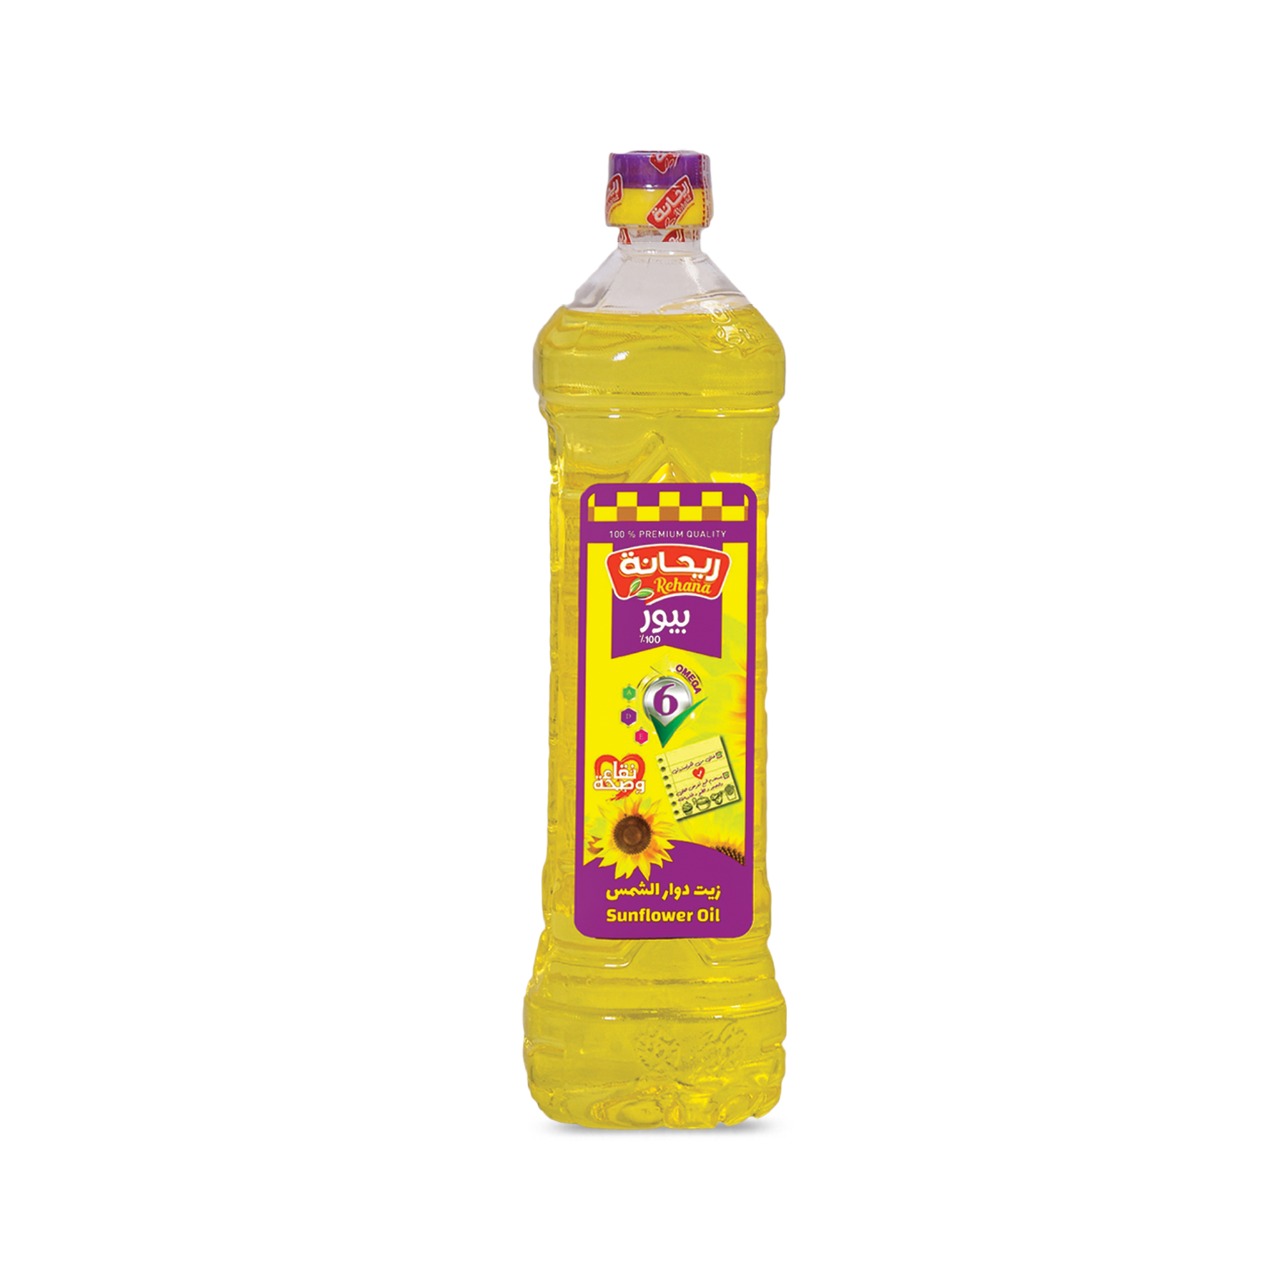 Sunflower Oil 0.9 liter